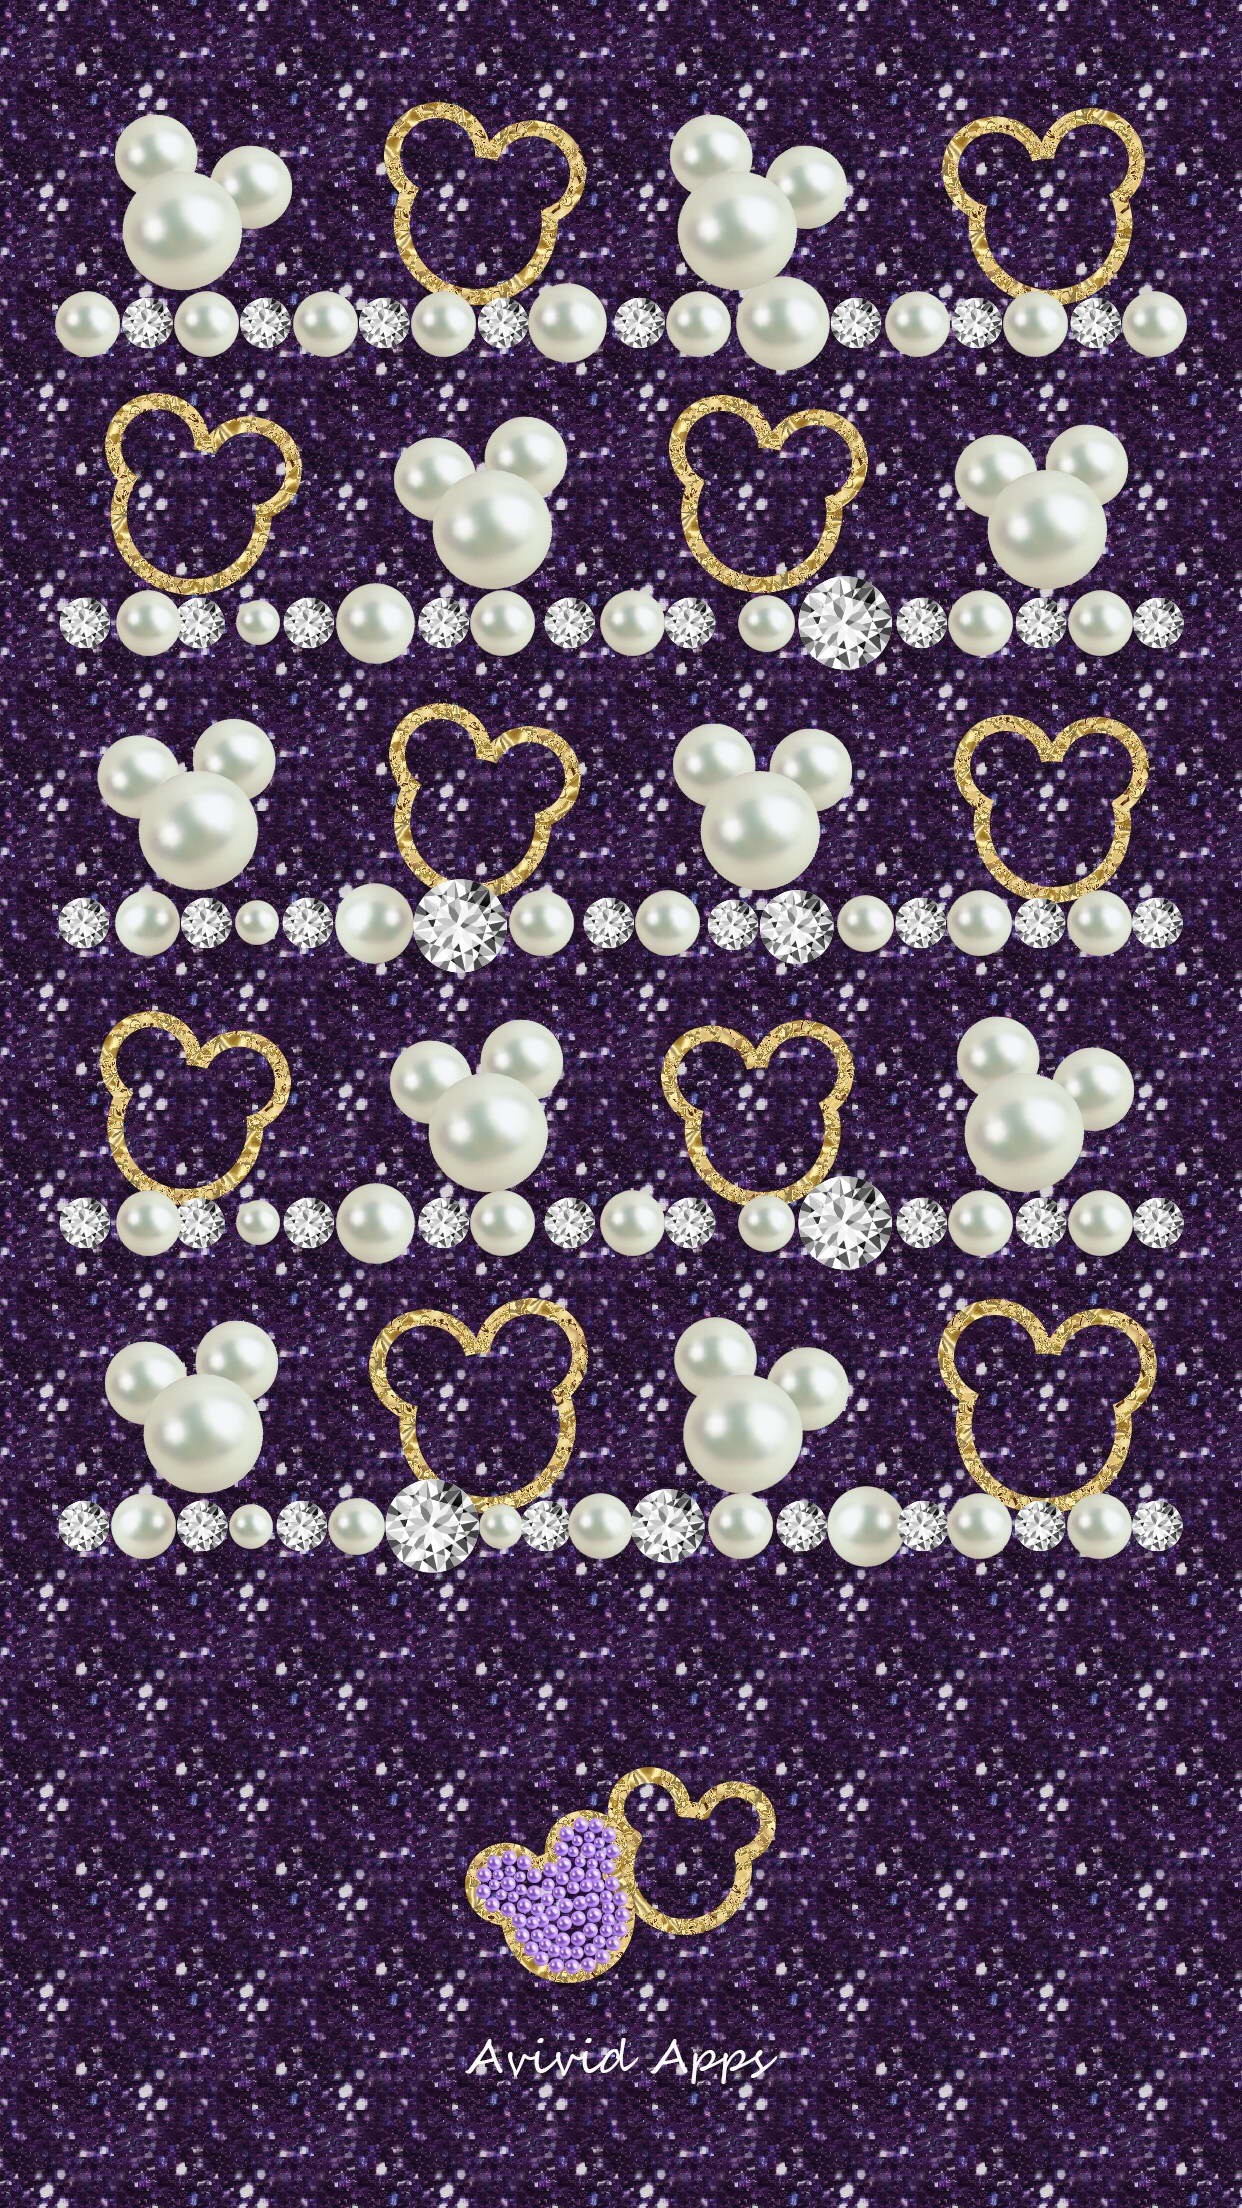 Mickey / Disney wallpaper